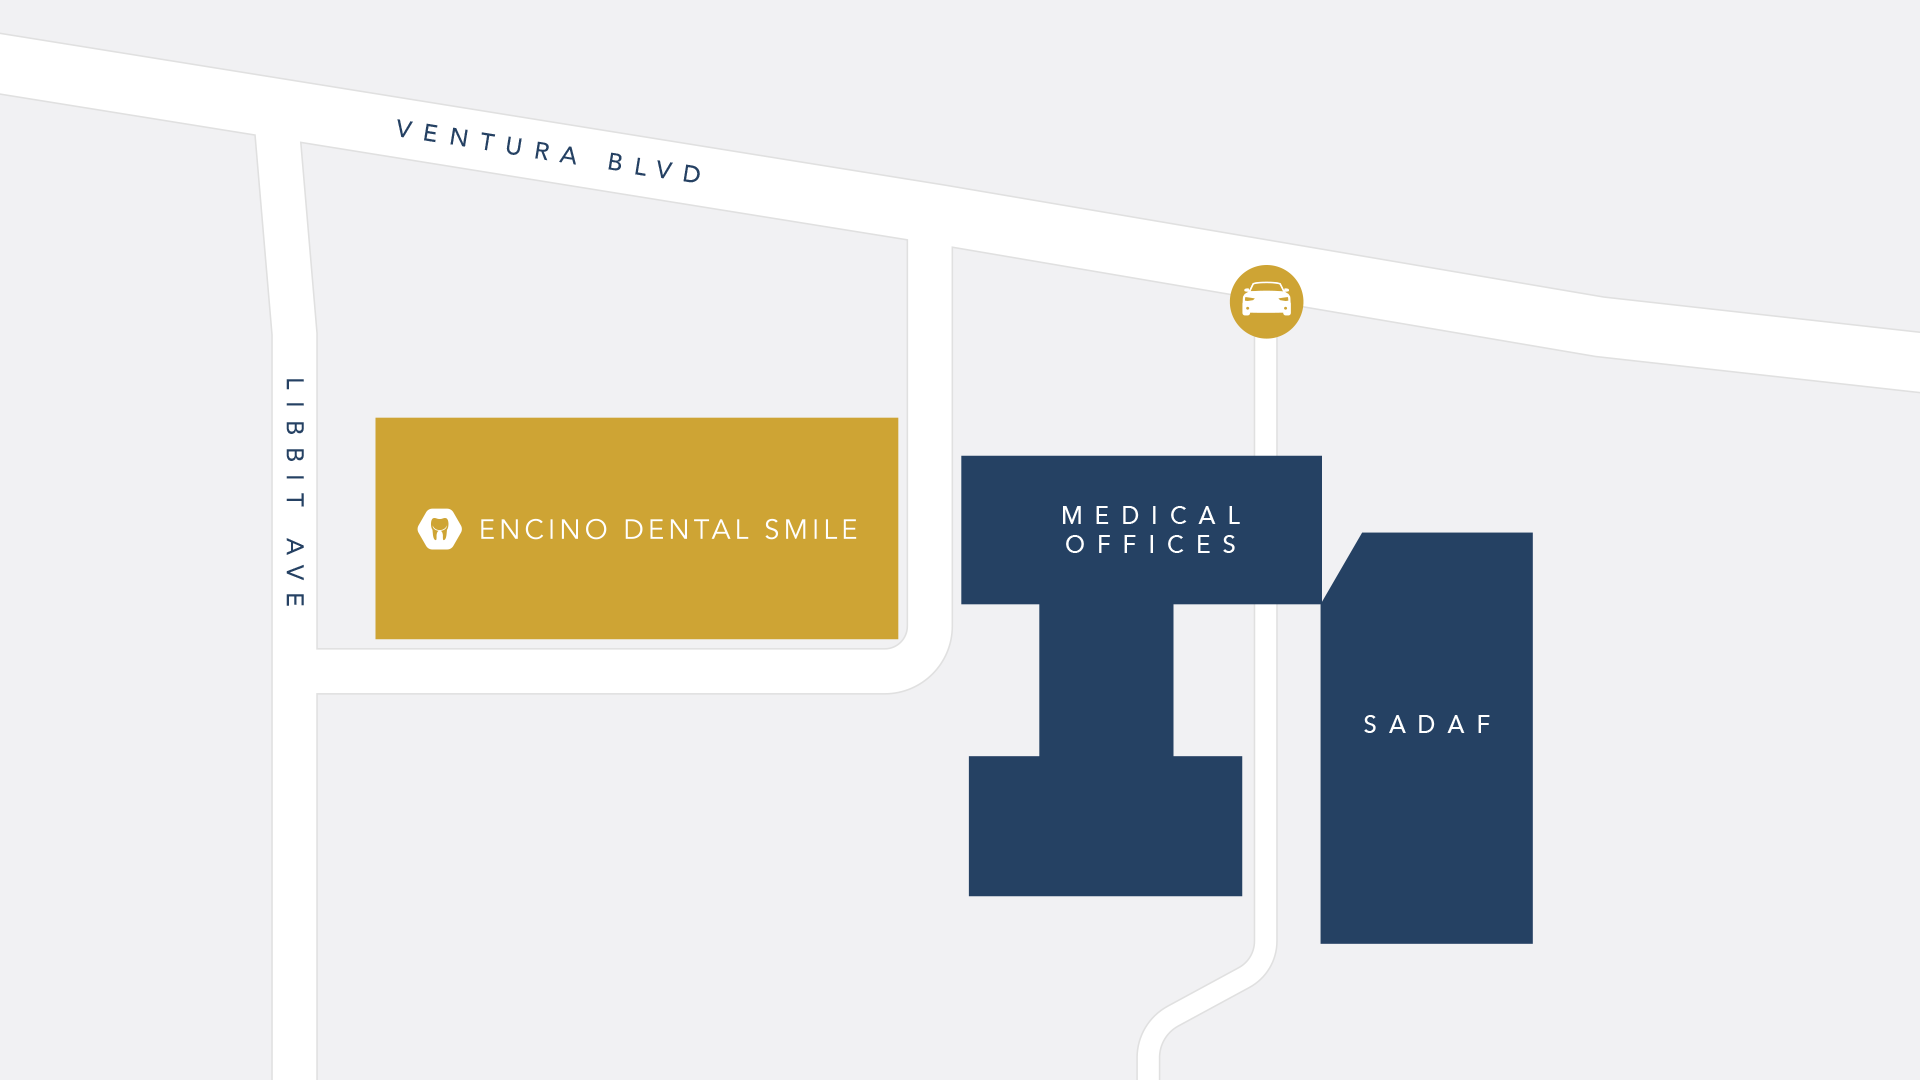 Encino Dental Smile Parking Map